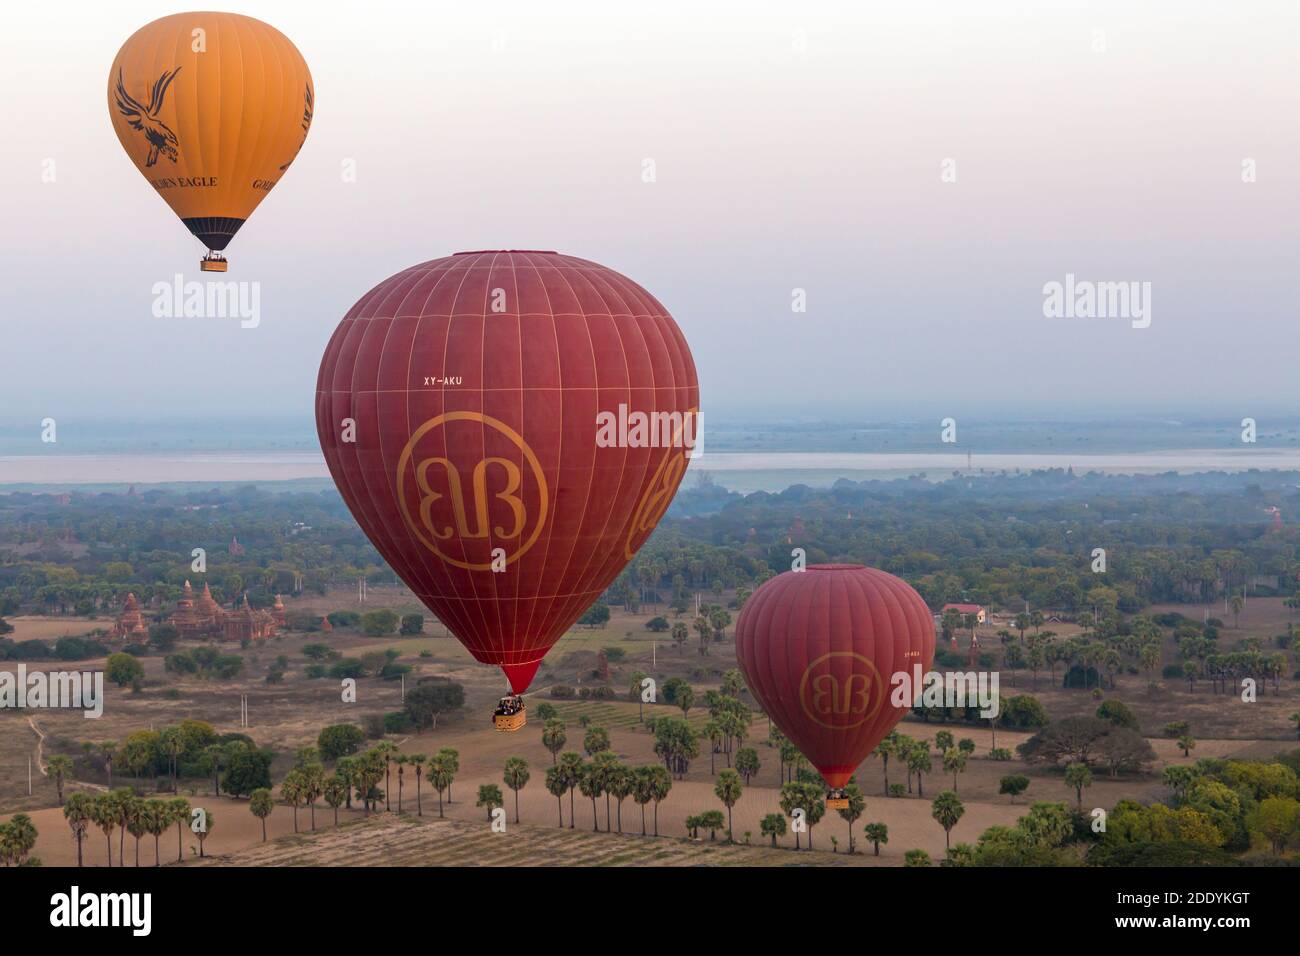 Montgolfières survolant des temples à Bagan à l'aube, le Myanmar (Birmanie), l'Asie en février, extrait de l'air en montgolfière Banque D'Images